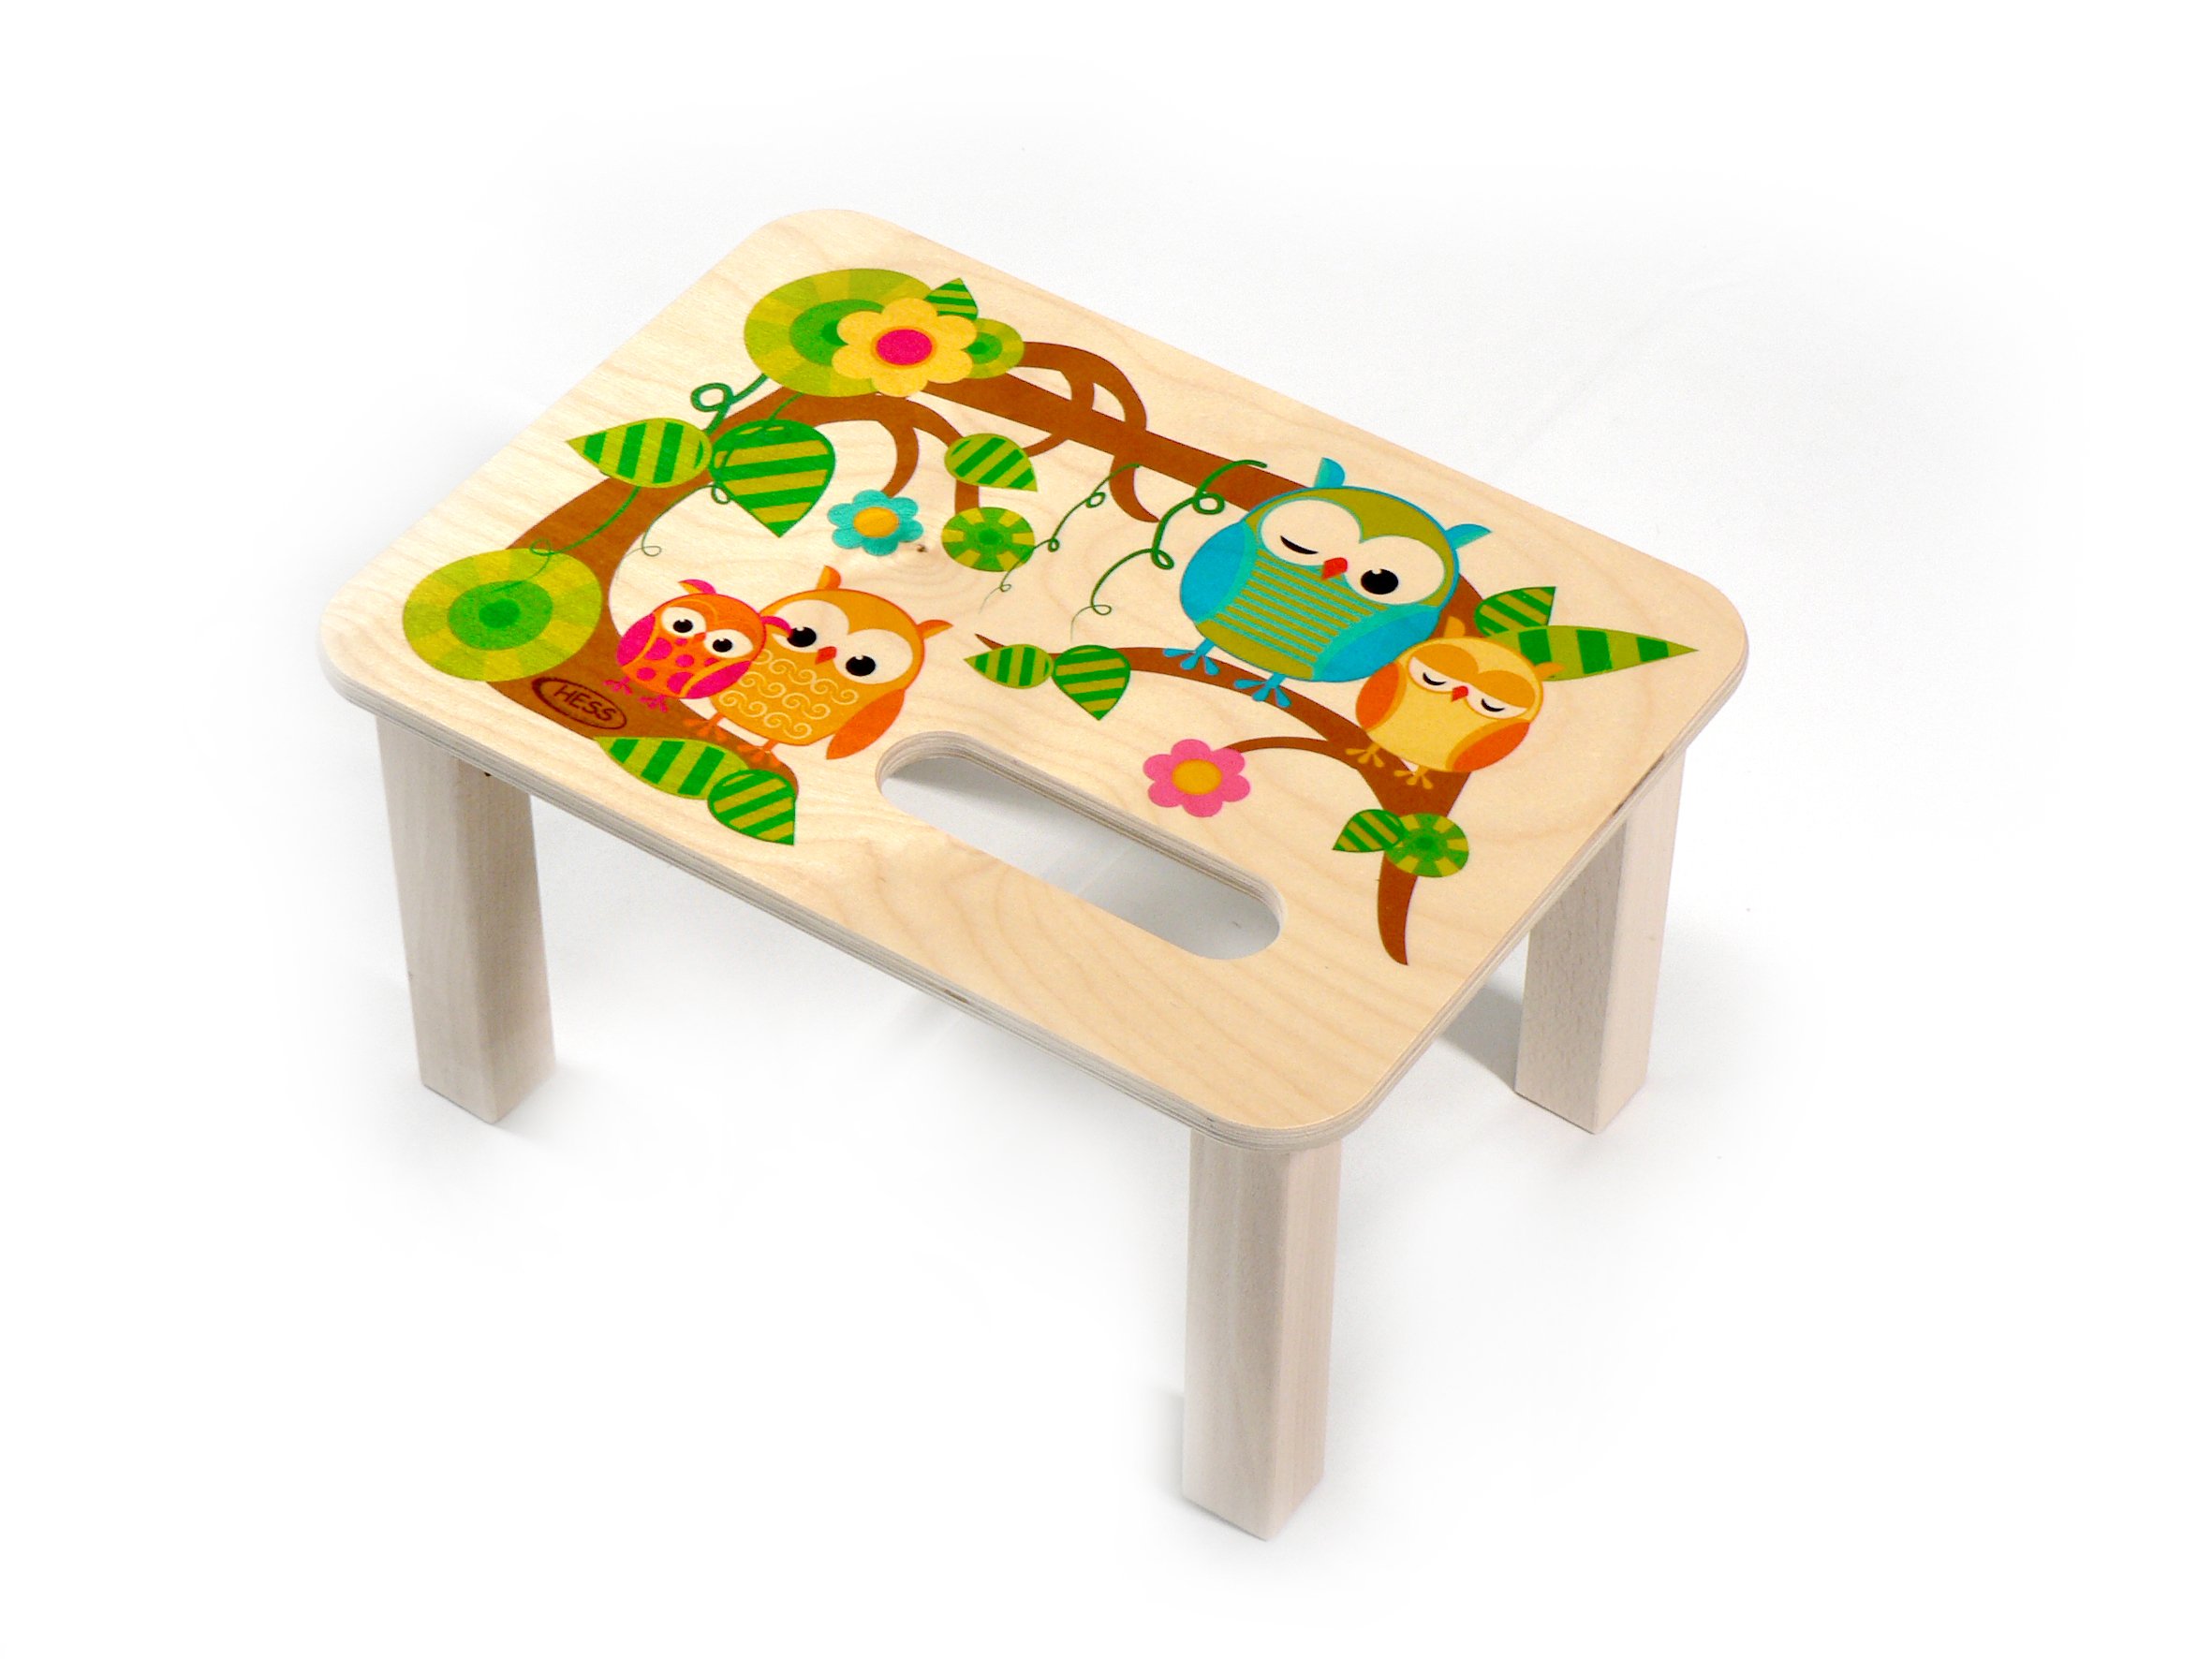 Hess Holzspielzeug 30283 - Fußbank aus Holz für Kinder, Serie Eule, handgefertigt, ca. 33 x 24 x 18 cm groß, zum Sitzen und als Erhöhung beim Stehen